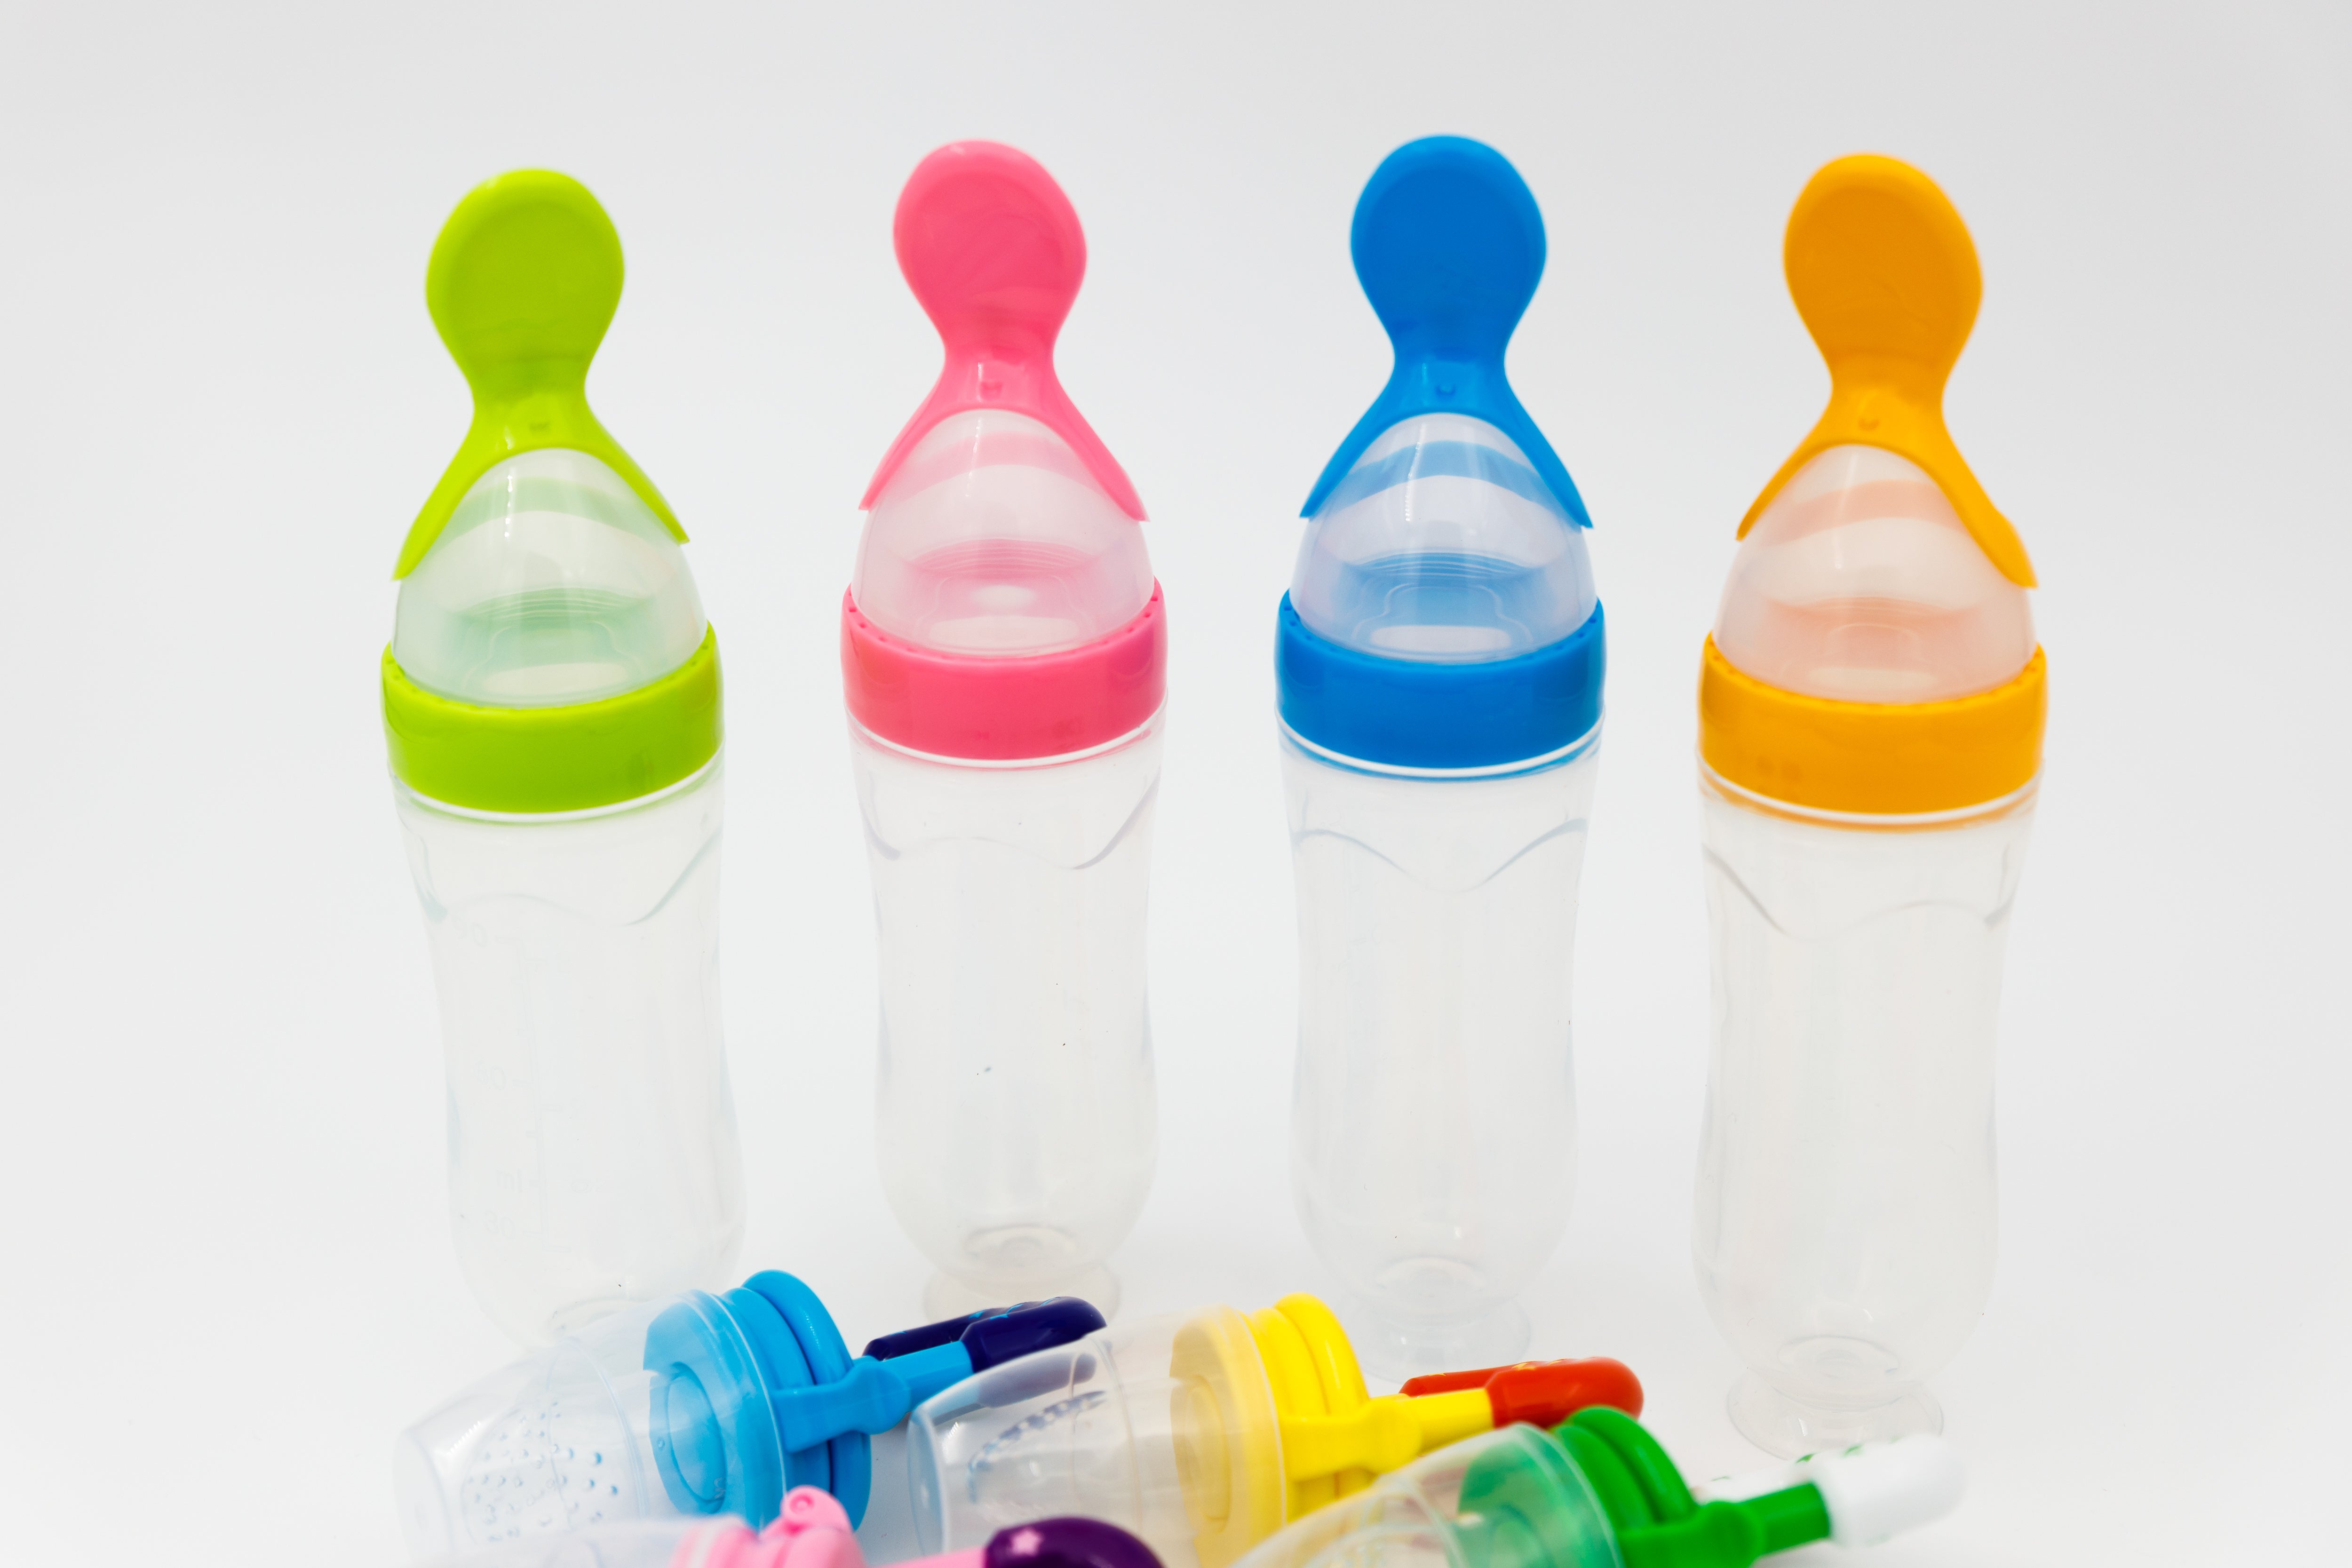 Set de hranire pentru bebelusi 5 in 1, 6 luni+, diverse culori, silicon, 21x5 cm